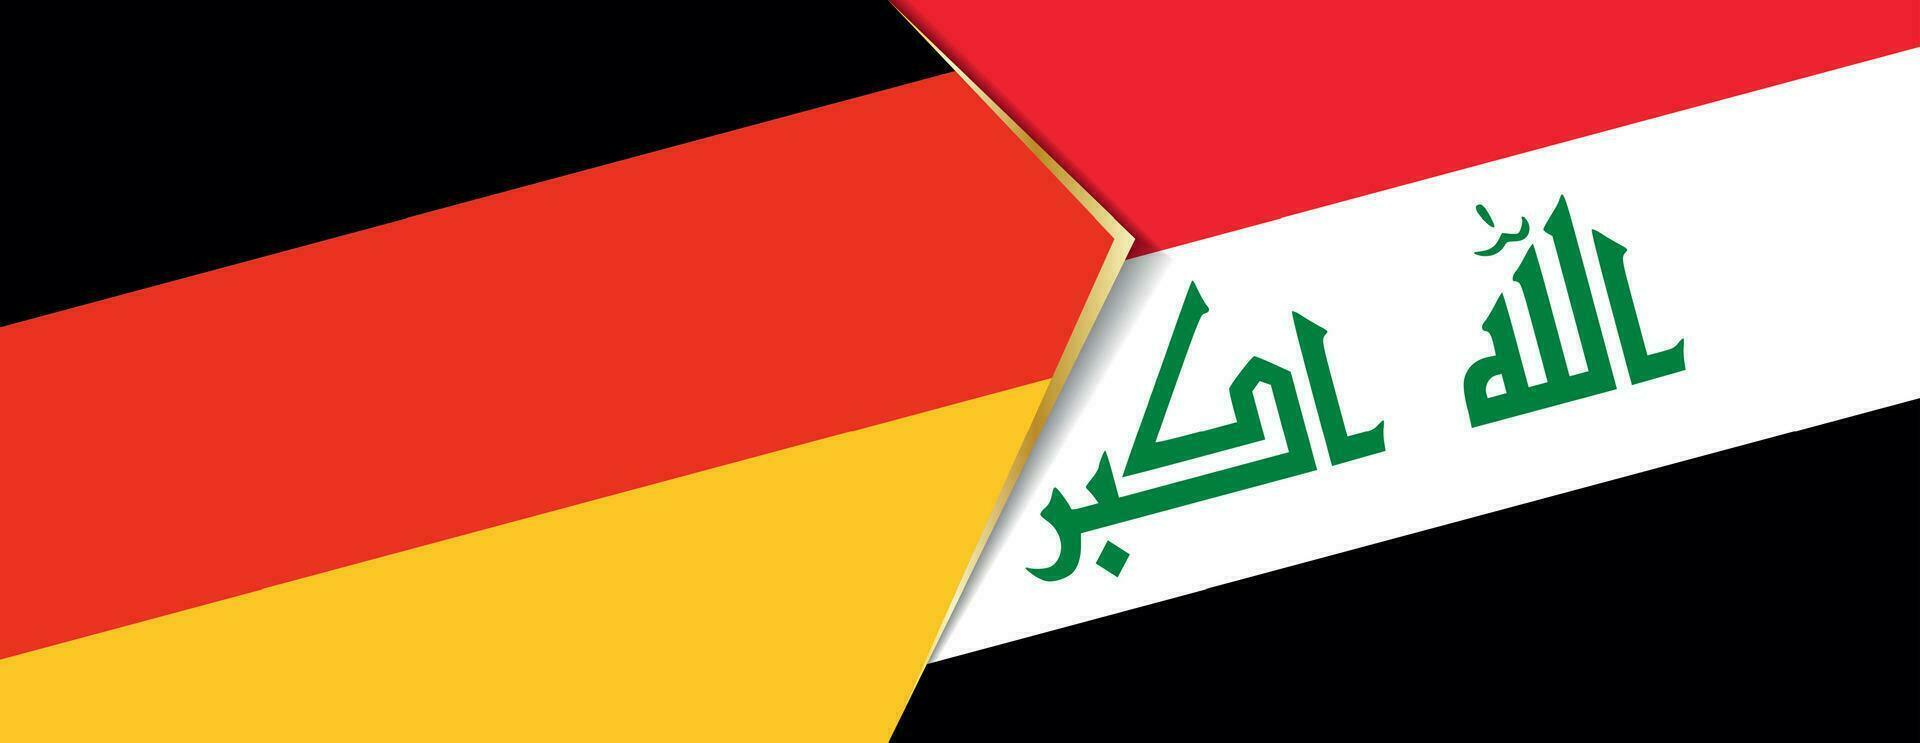 Tyskland och irak flaggor, två vektor flaggor.